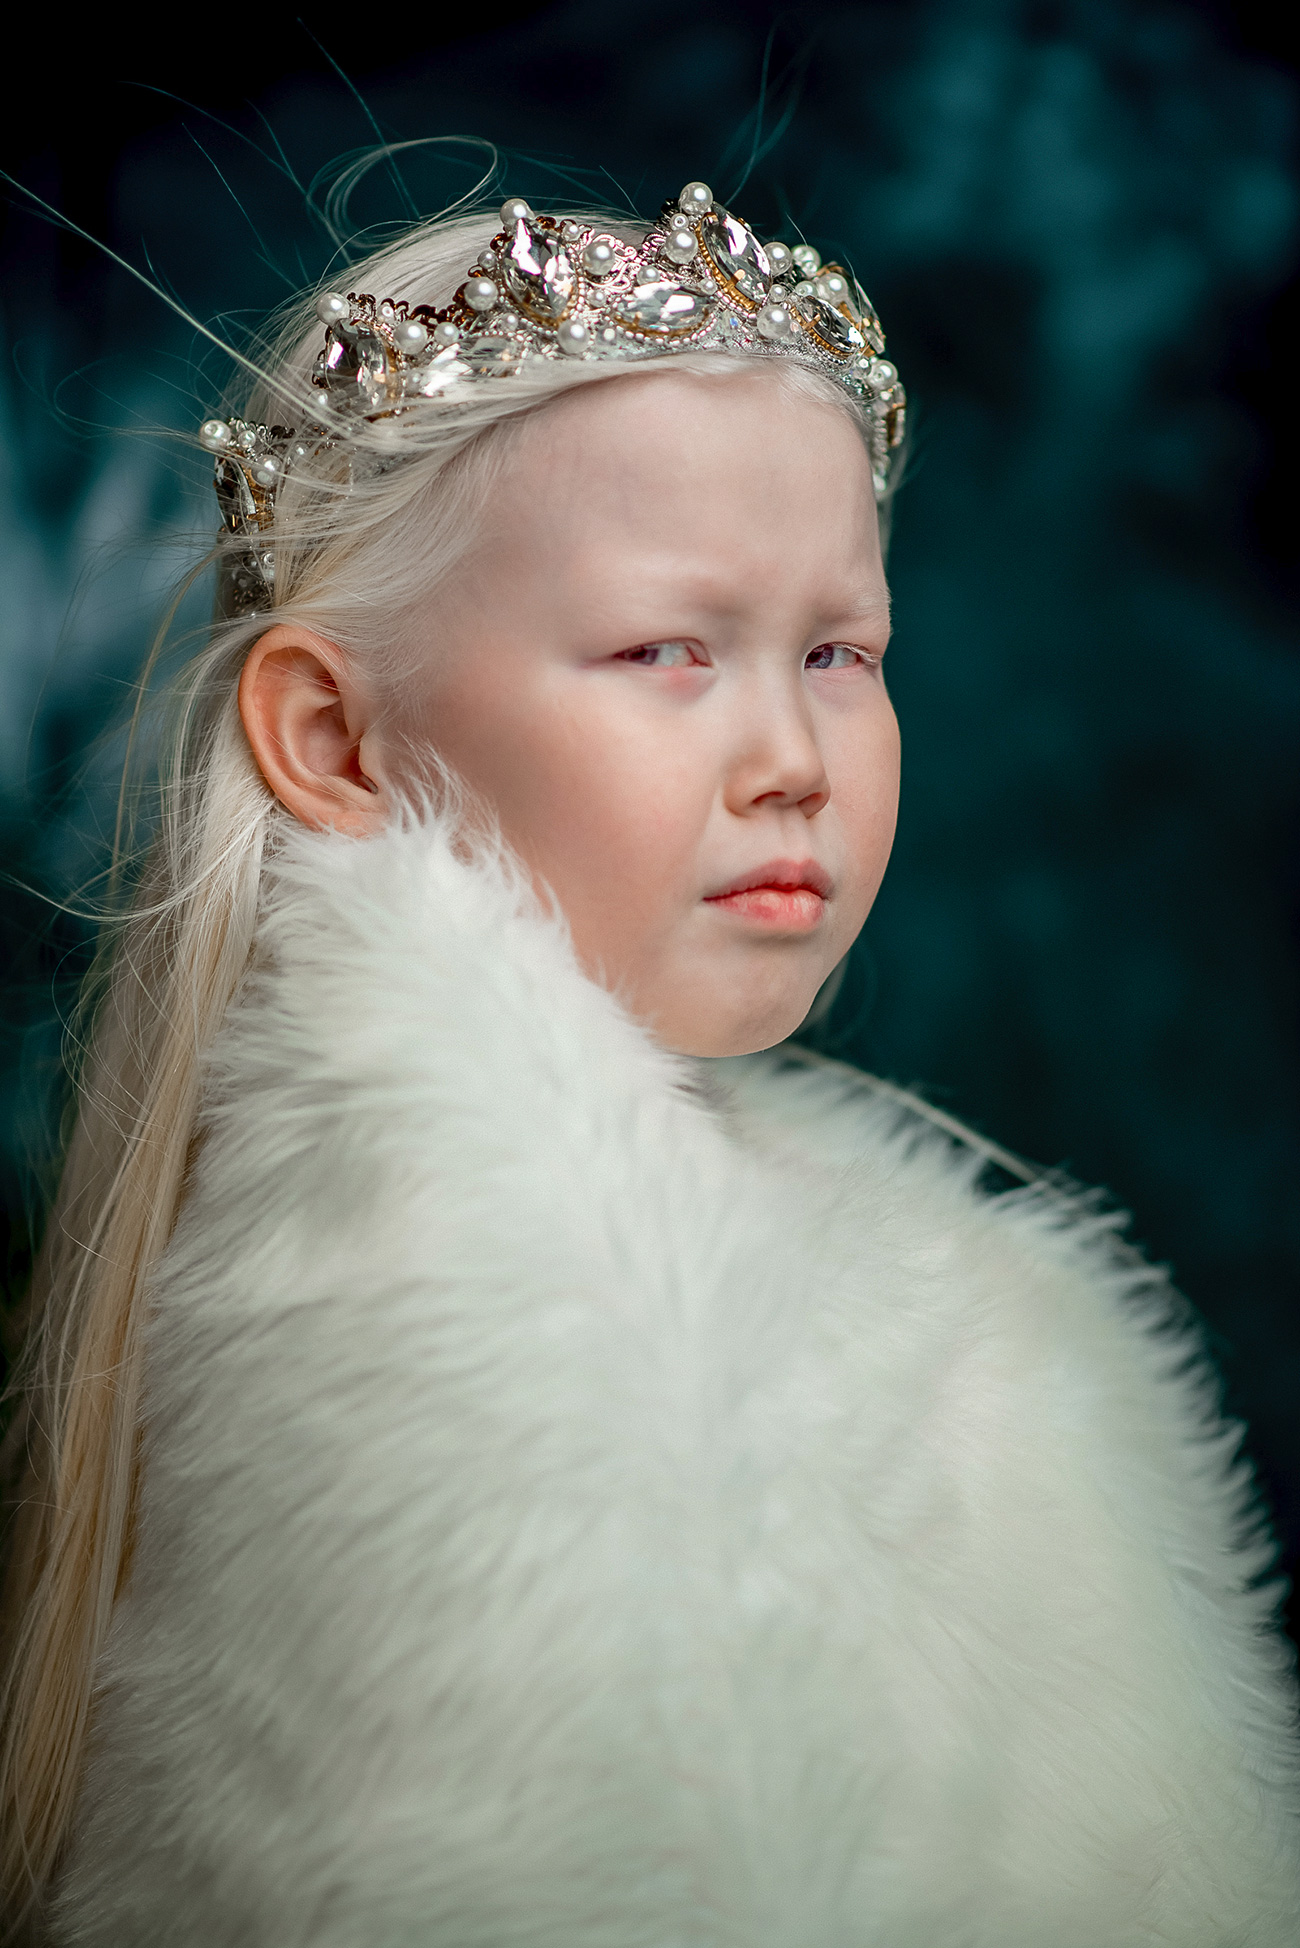 Nariyana je albino deklica.  Ima snežno bele lase, porcelanasto kožo in kameleonske modro-vijoličaste oči. Njen videz sploh ni značilen za prebivalce njene rodne Jakutije, kjer povečini živijo rjavooke rjavolaske.